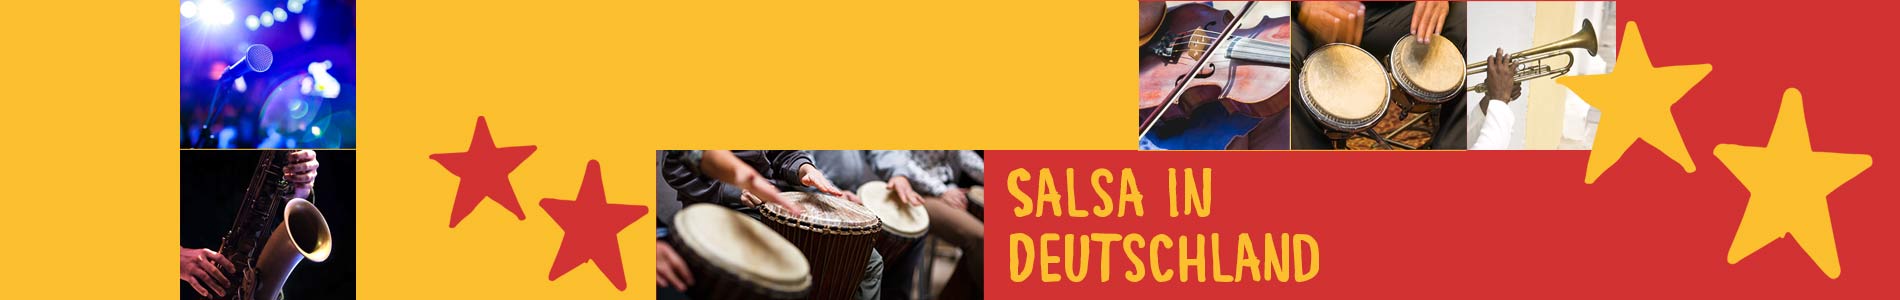 Salsa in Büchlberg – Salsa lernen und tanzen, Tanzkurse, Partys, Veranstaltungen